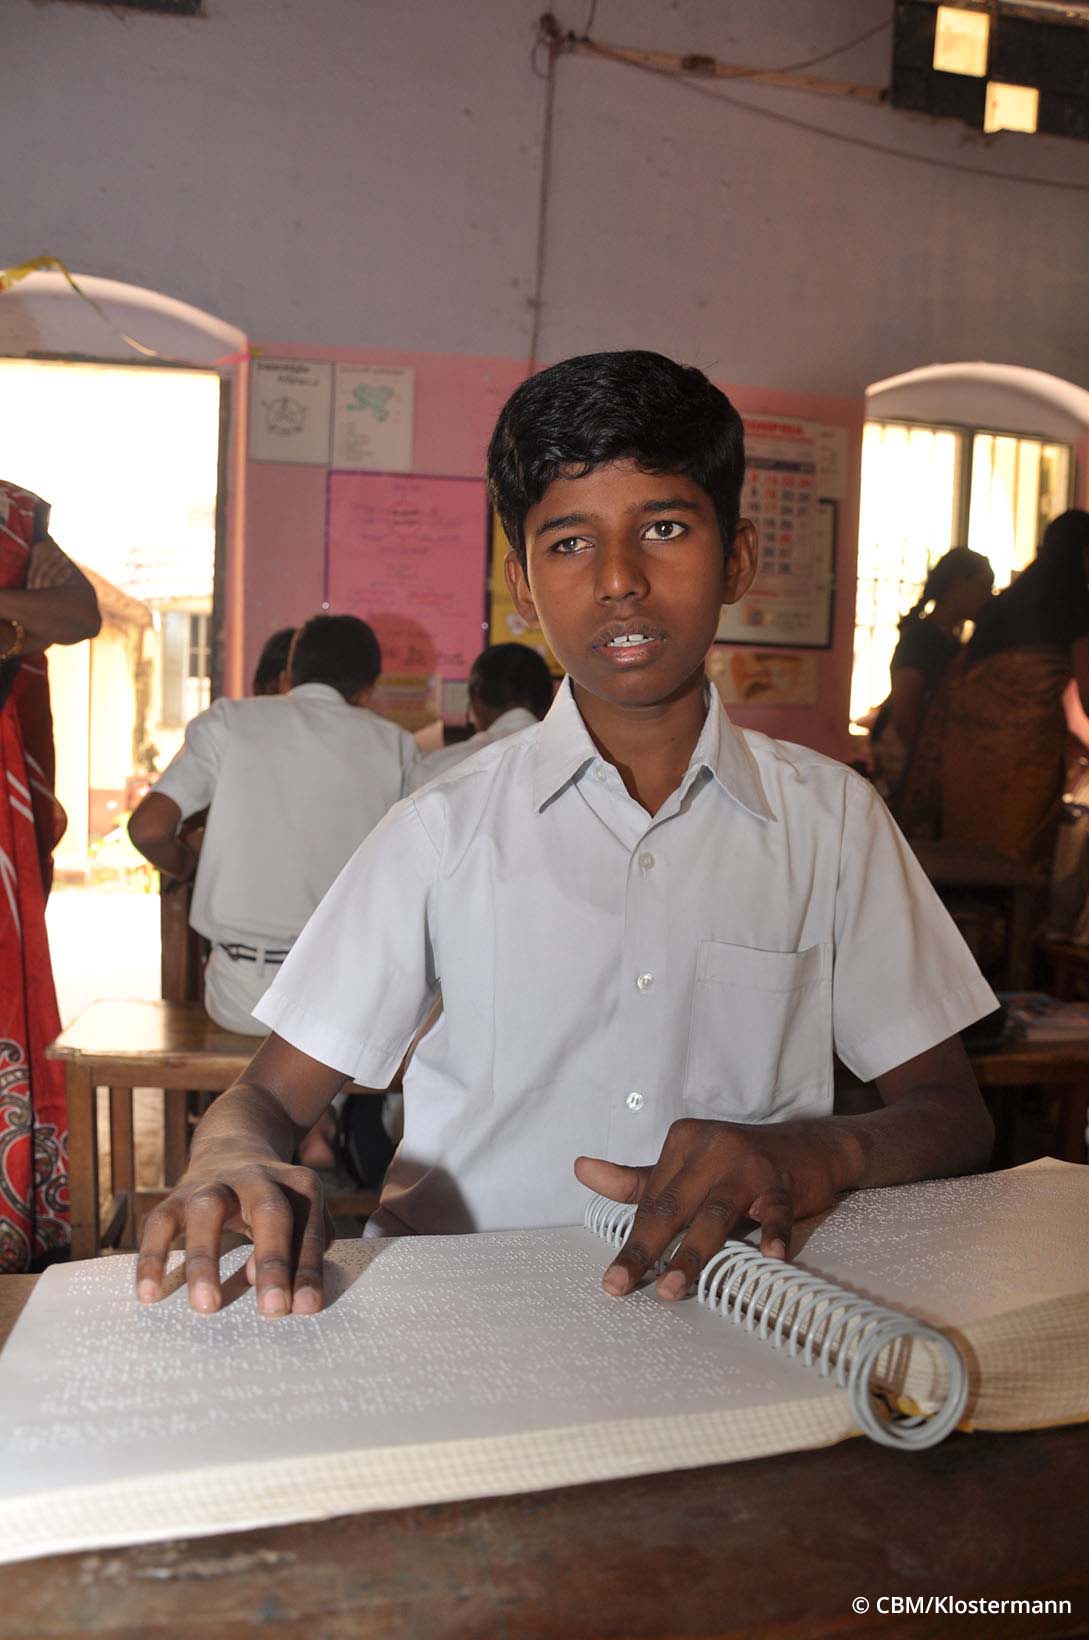 Un giovane ragazzo indiano legge in un’aula scolastica da un libro con la scrittura Braille.